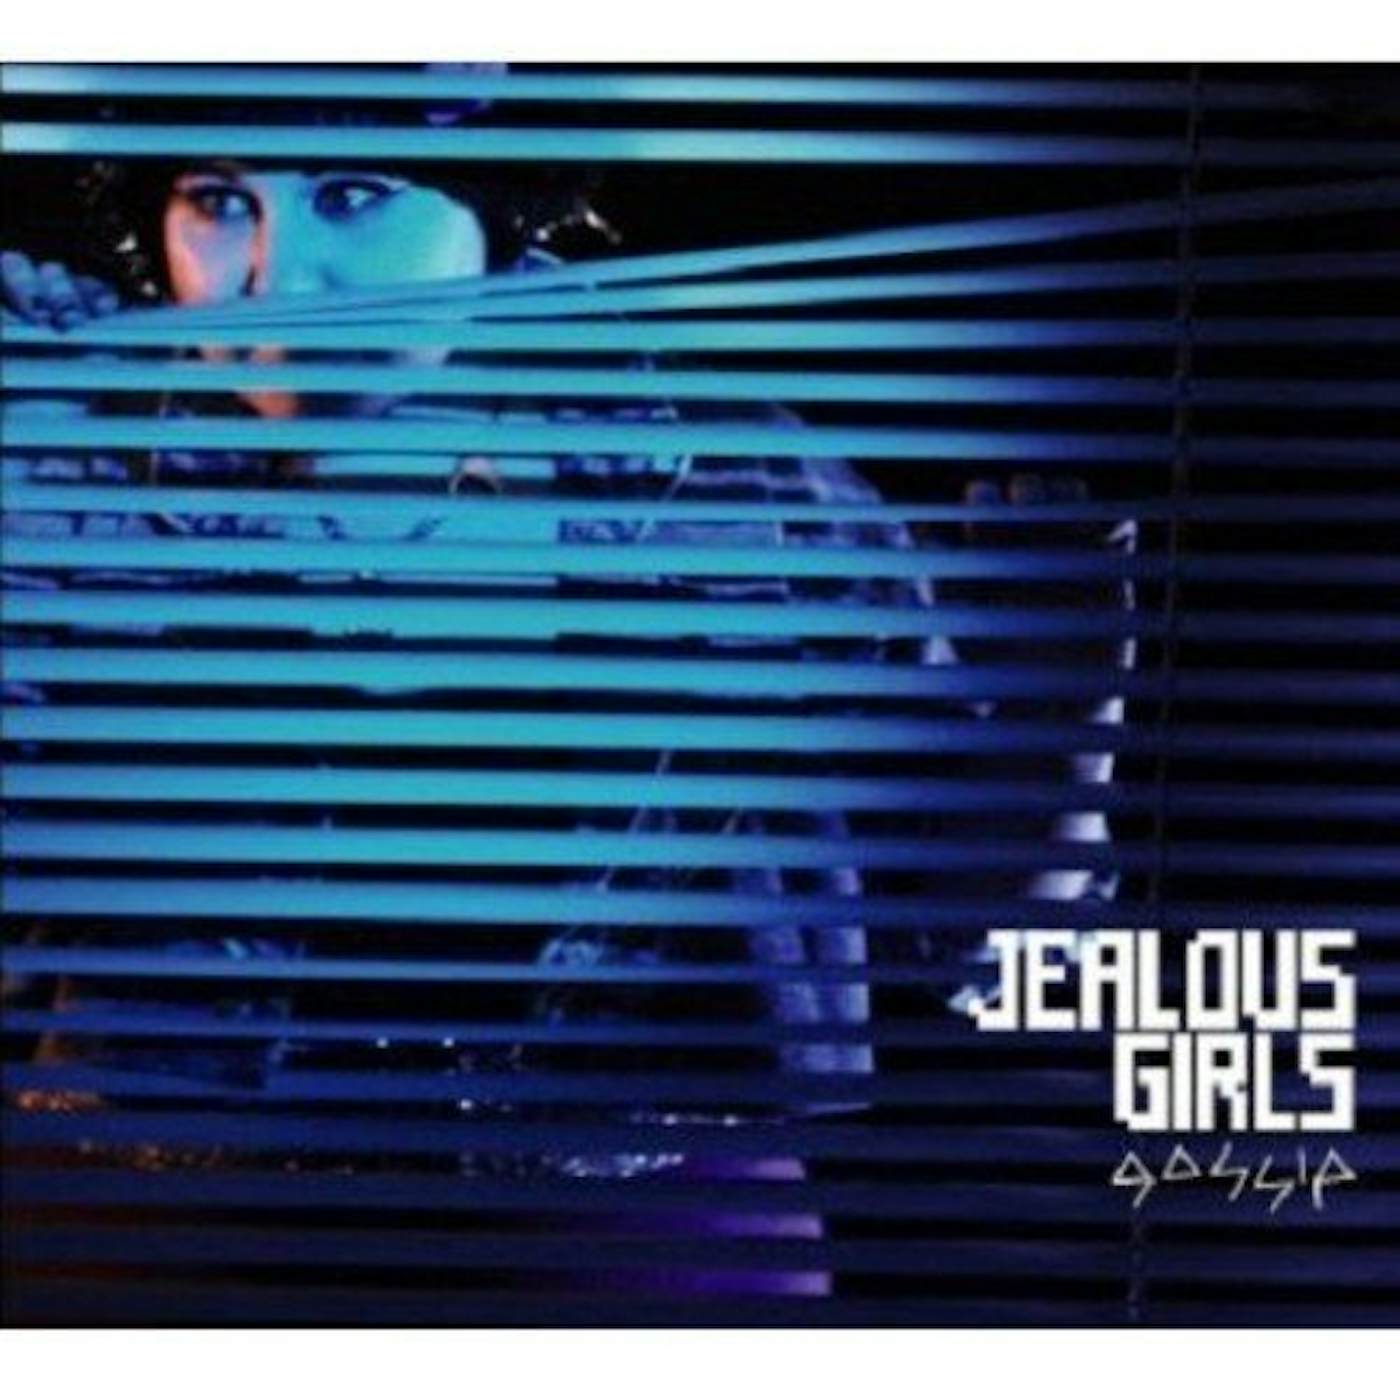 Gossip JEALOUS GIRLS PT. 2 Vinyl Record - UK Release